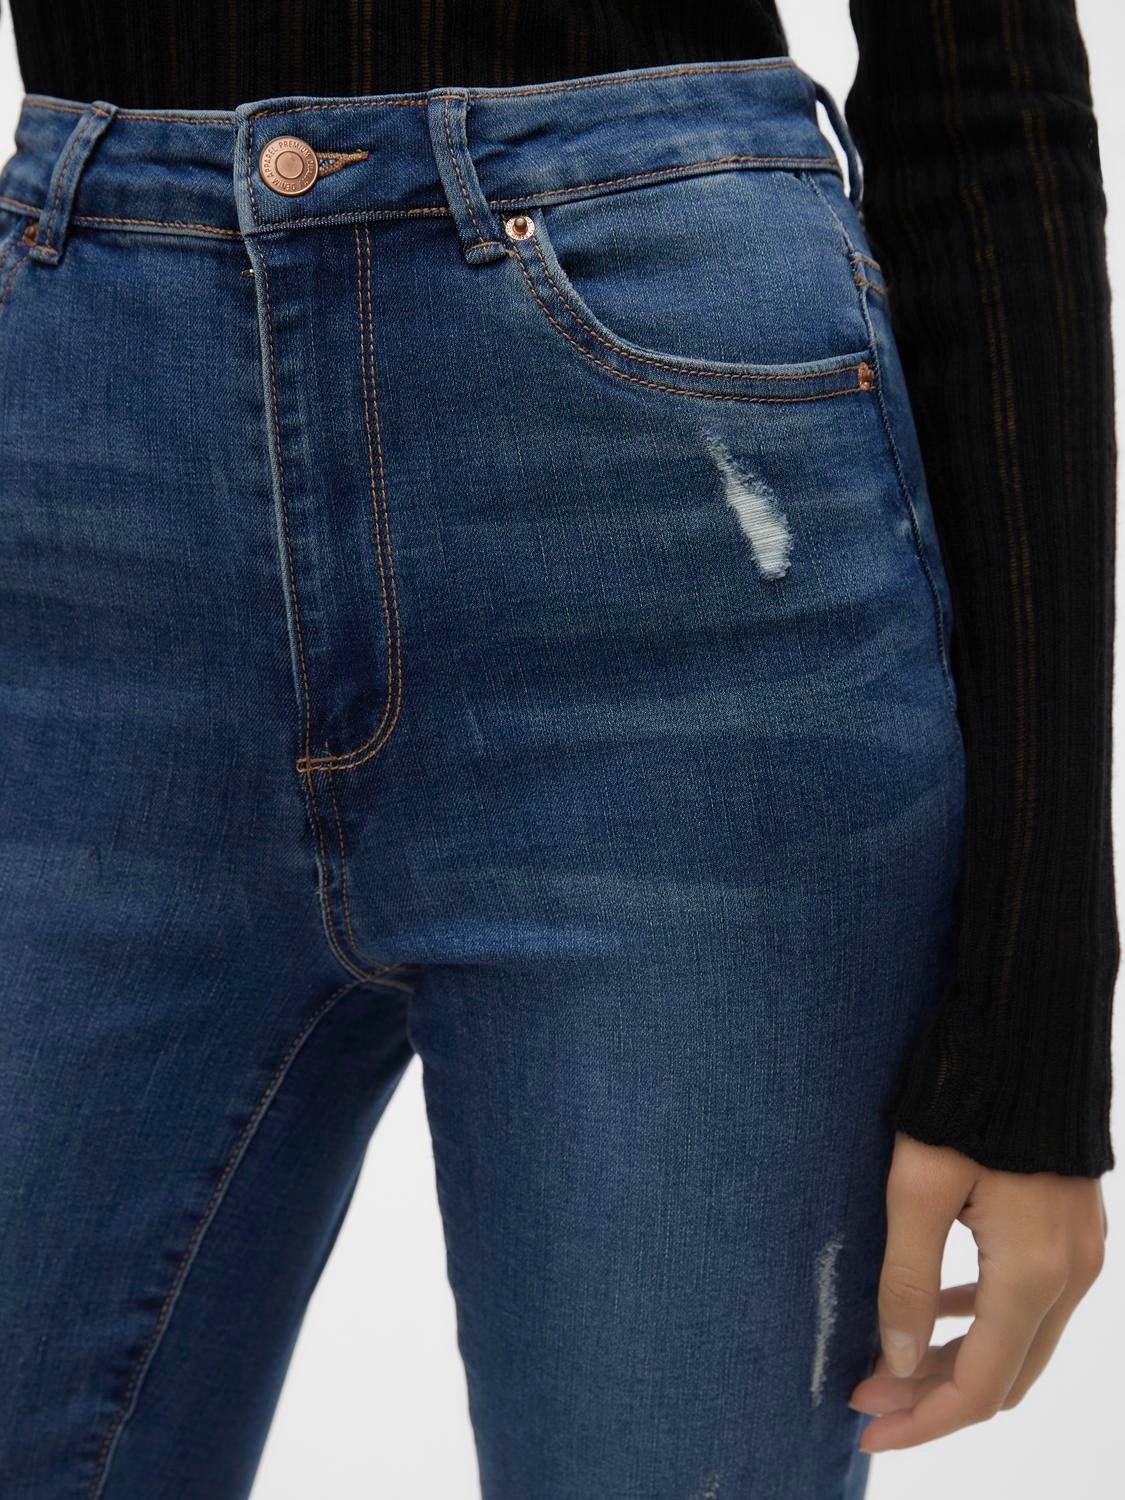 Vero Moda VMSOPHIA Skinny Fit Jeans -Medium Blue Denim - 10290678